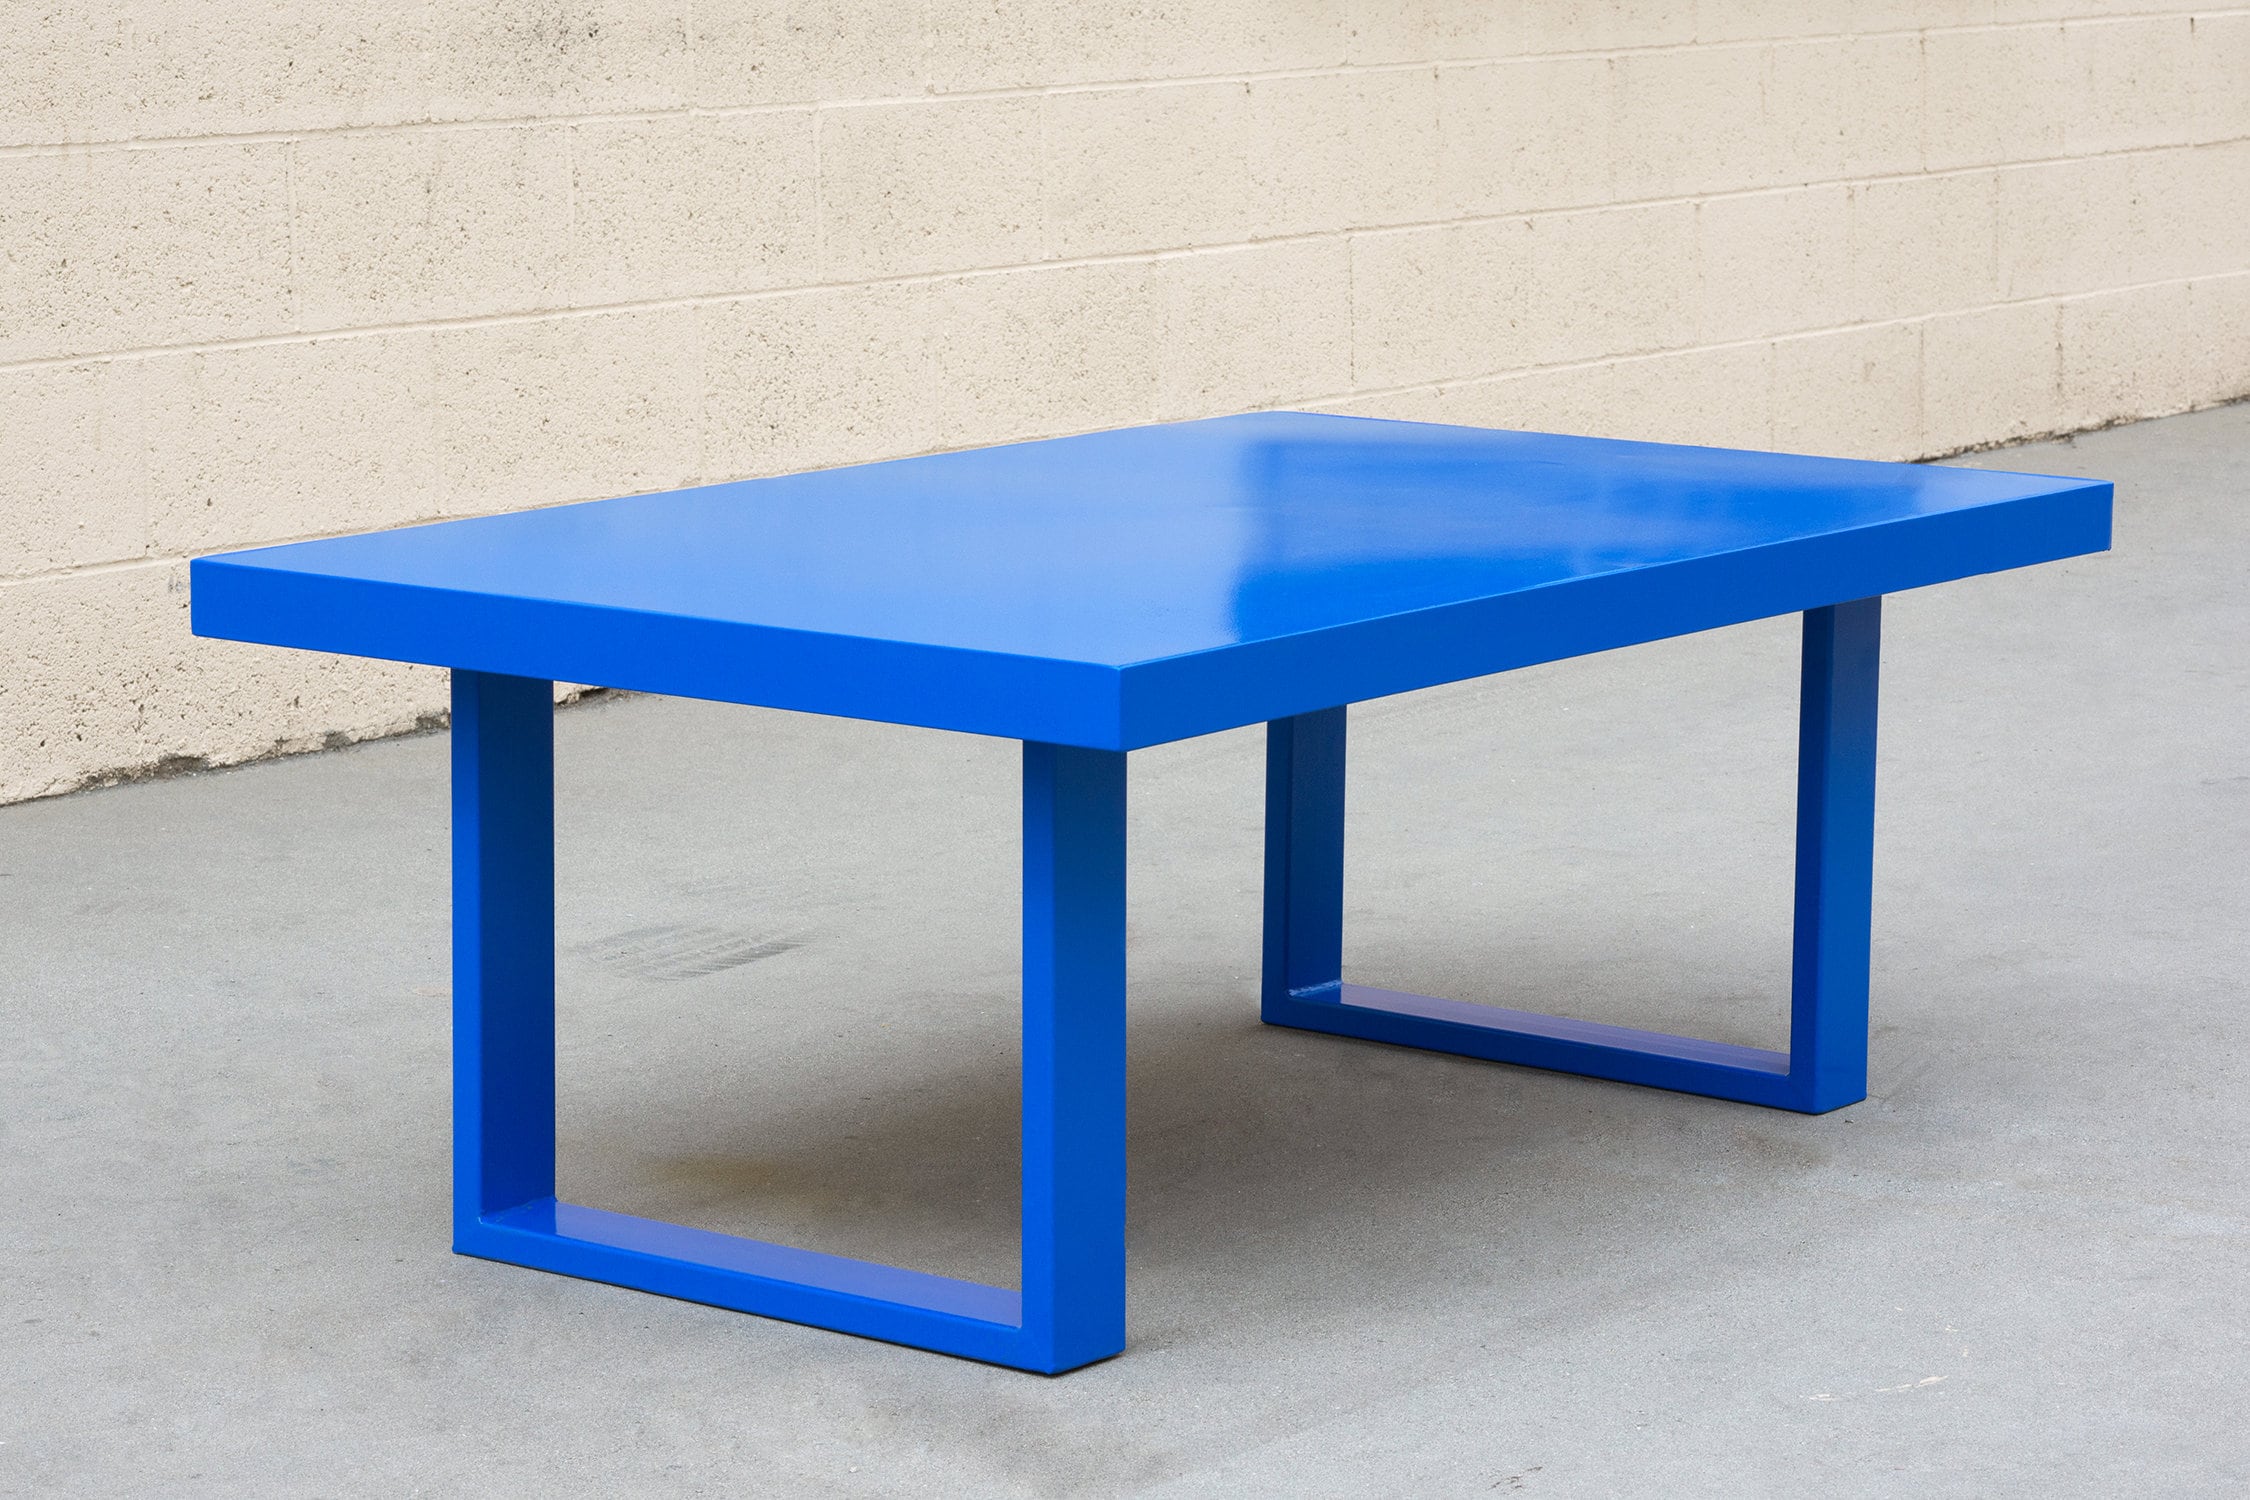 Table Basse Minimaliste en Acier sur Mesure Bleu, Livraison Gratuite Aux États-Unis